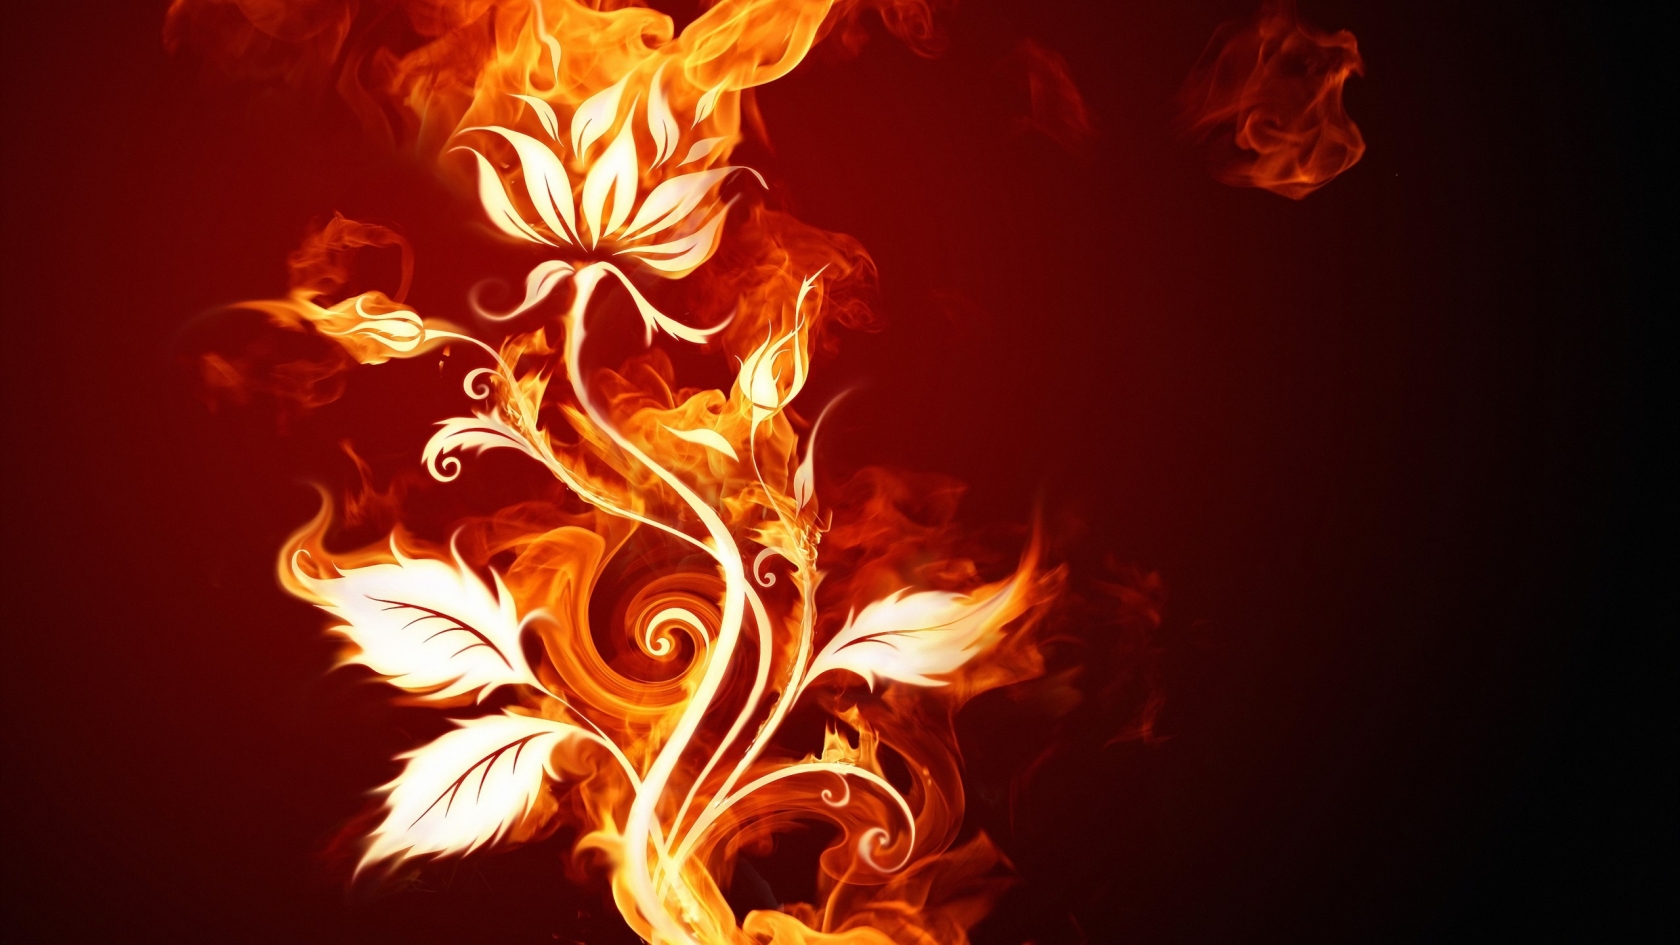 Burning Flower for 1680 x 945 HDTV resolution